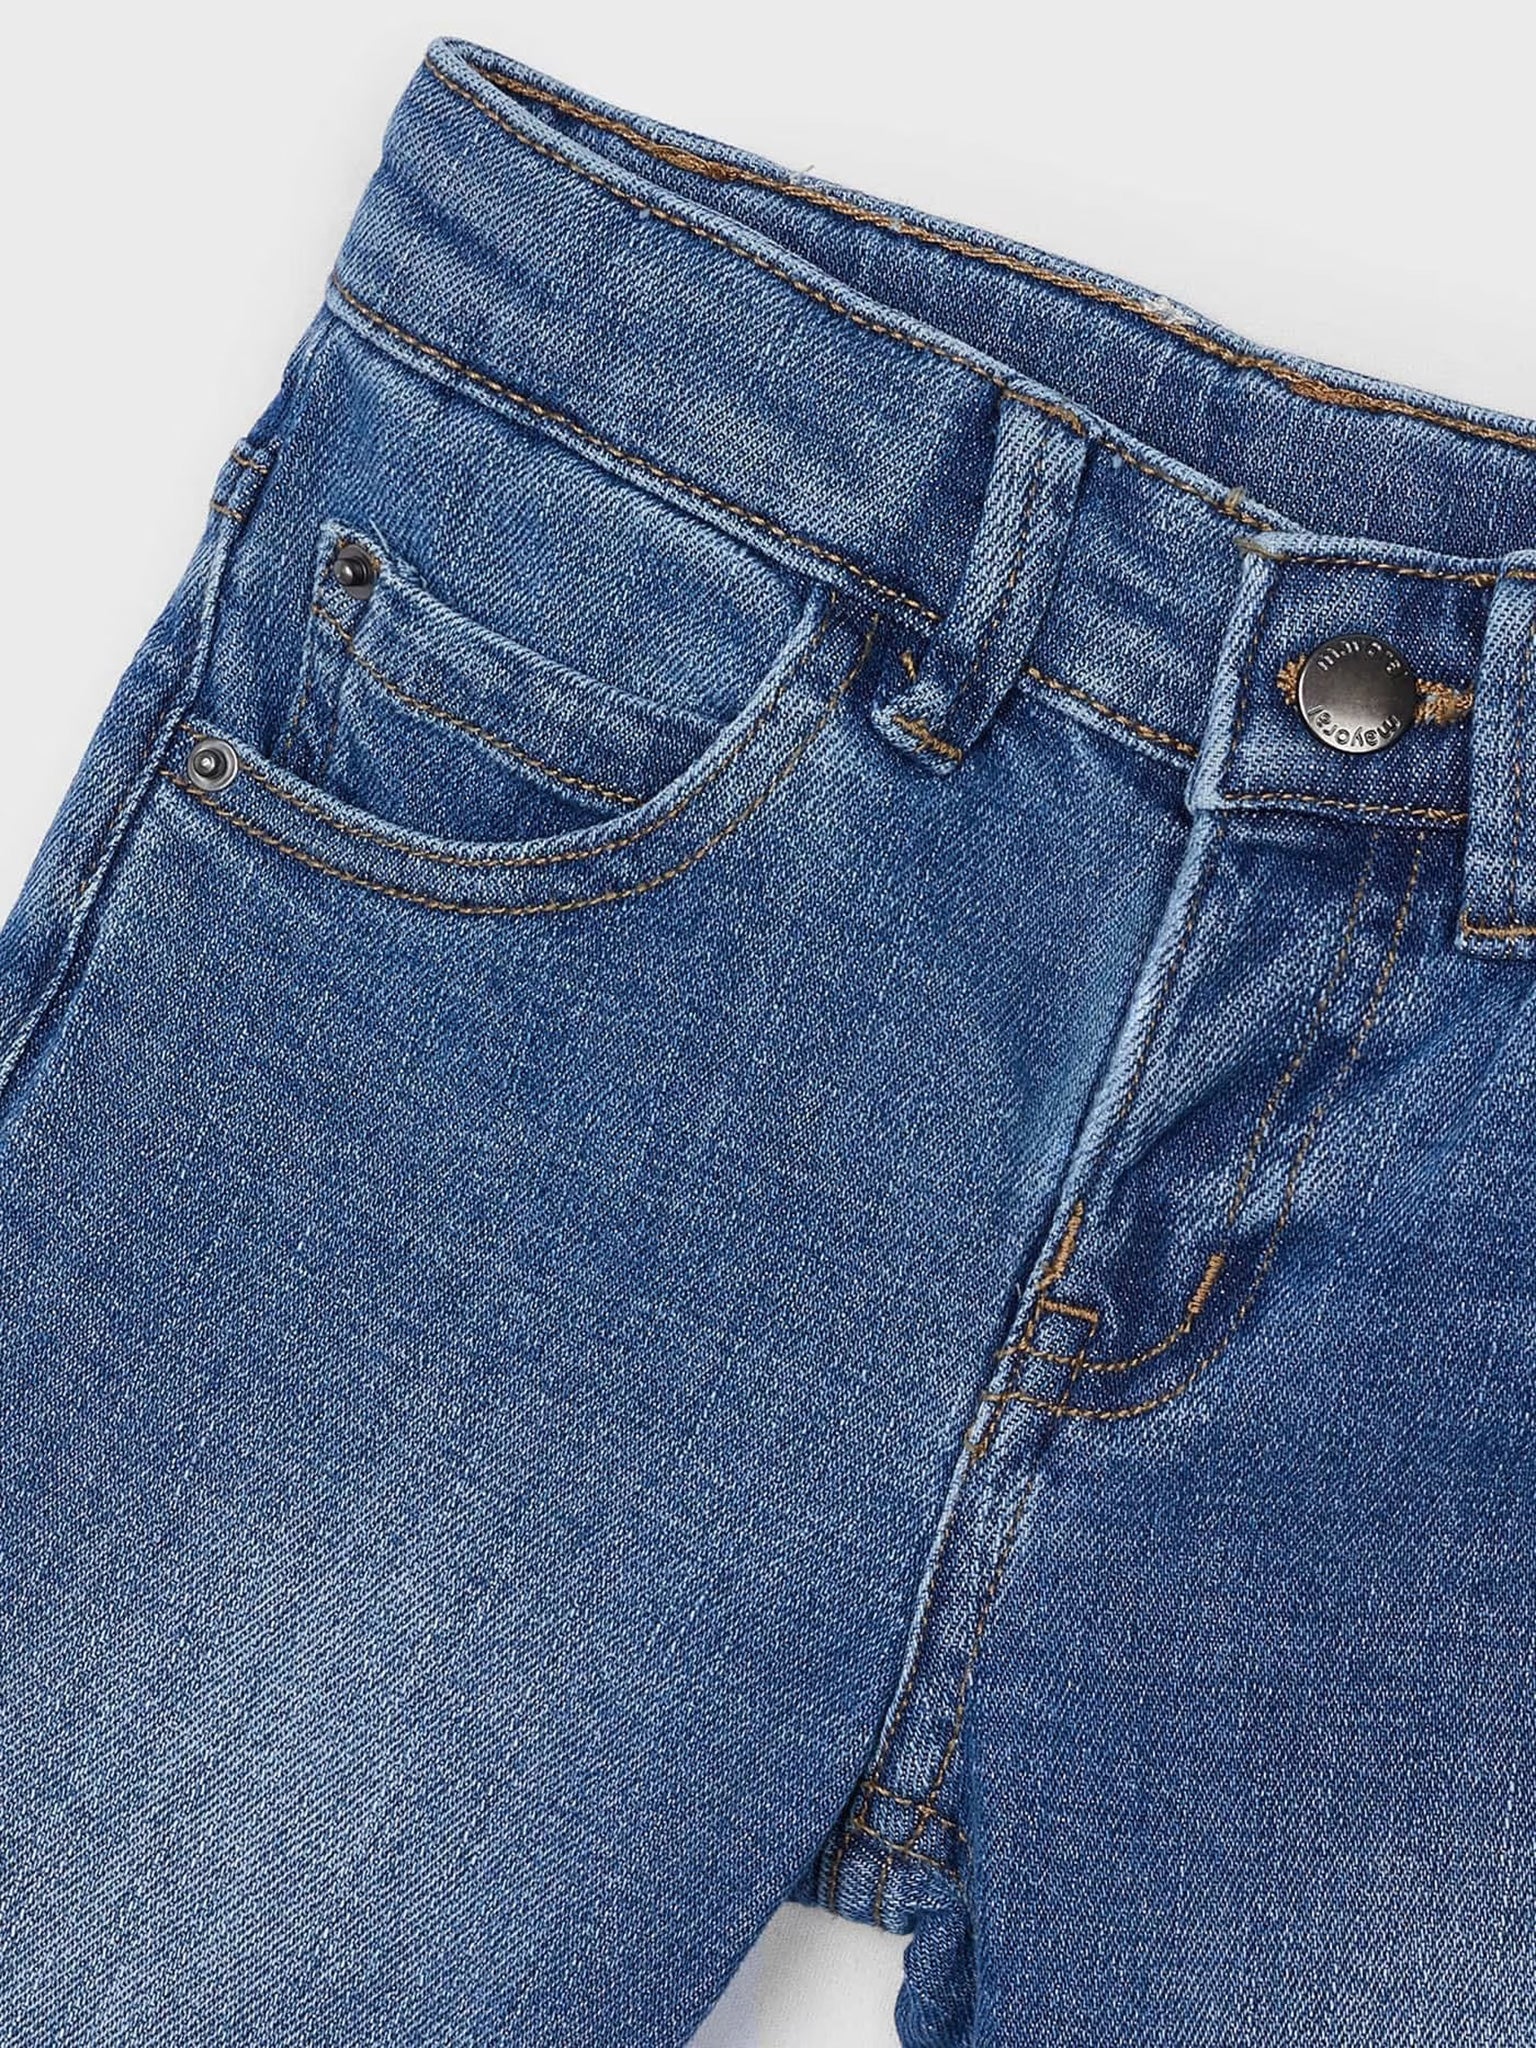 Παιδικό παντελόνι τζιν πετροπλυμένο regular fit Better Cotton 24-00540-097 | 24-00540-097